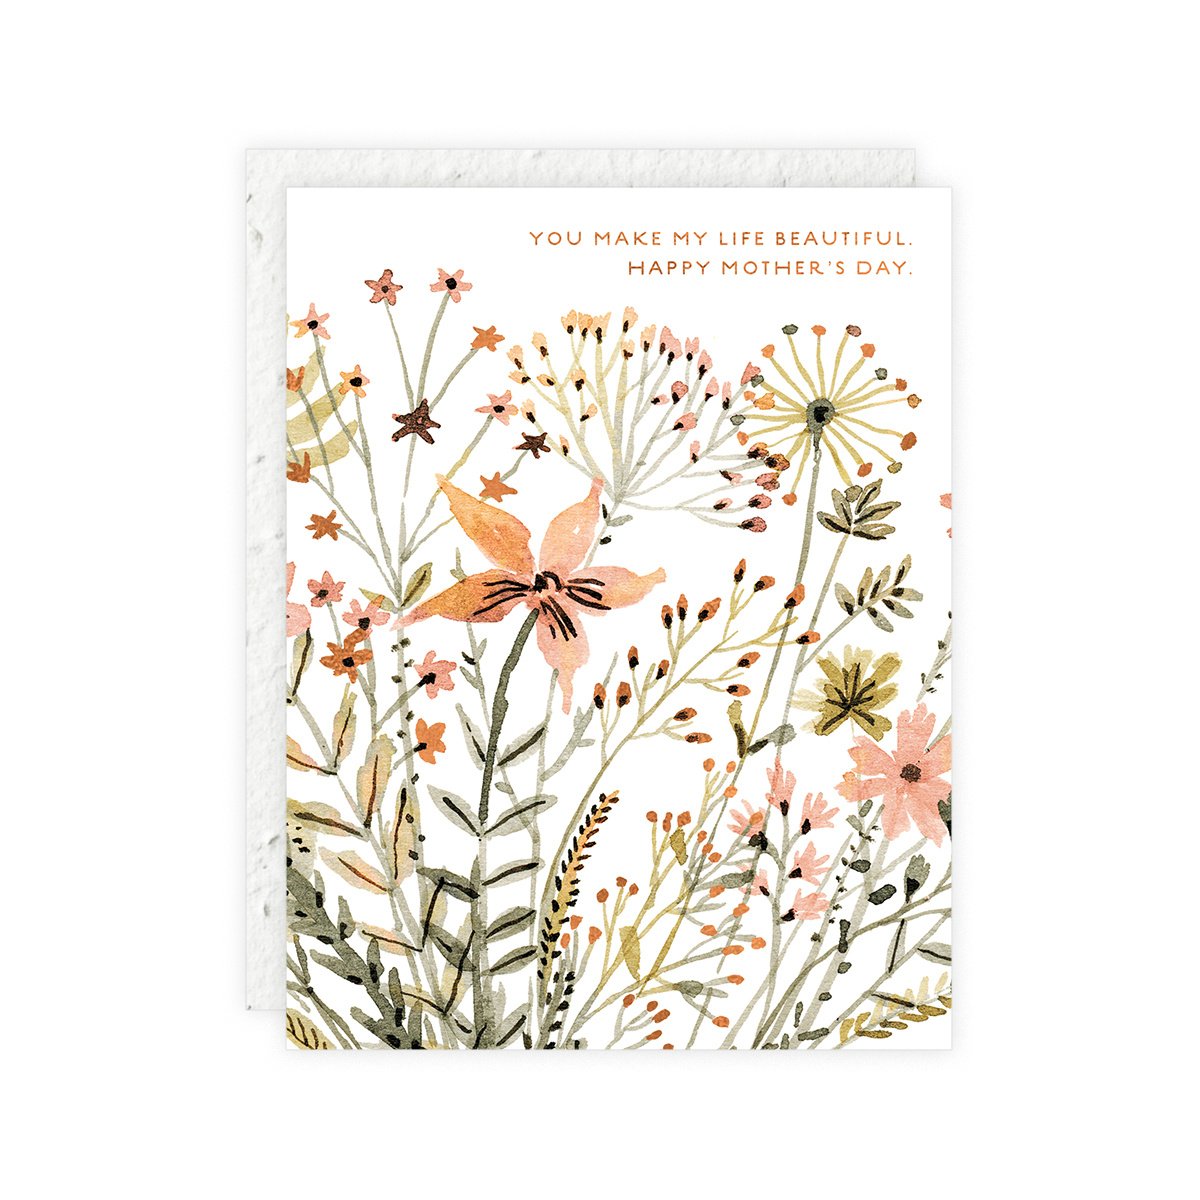 Seedlings - SED Make Life Beautiful Wildflowers Card